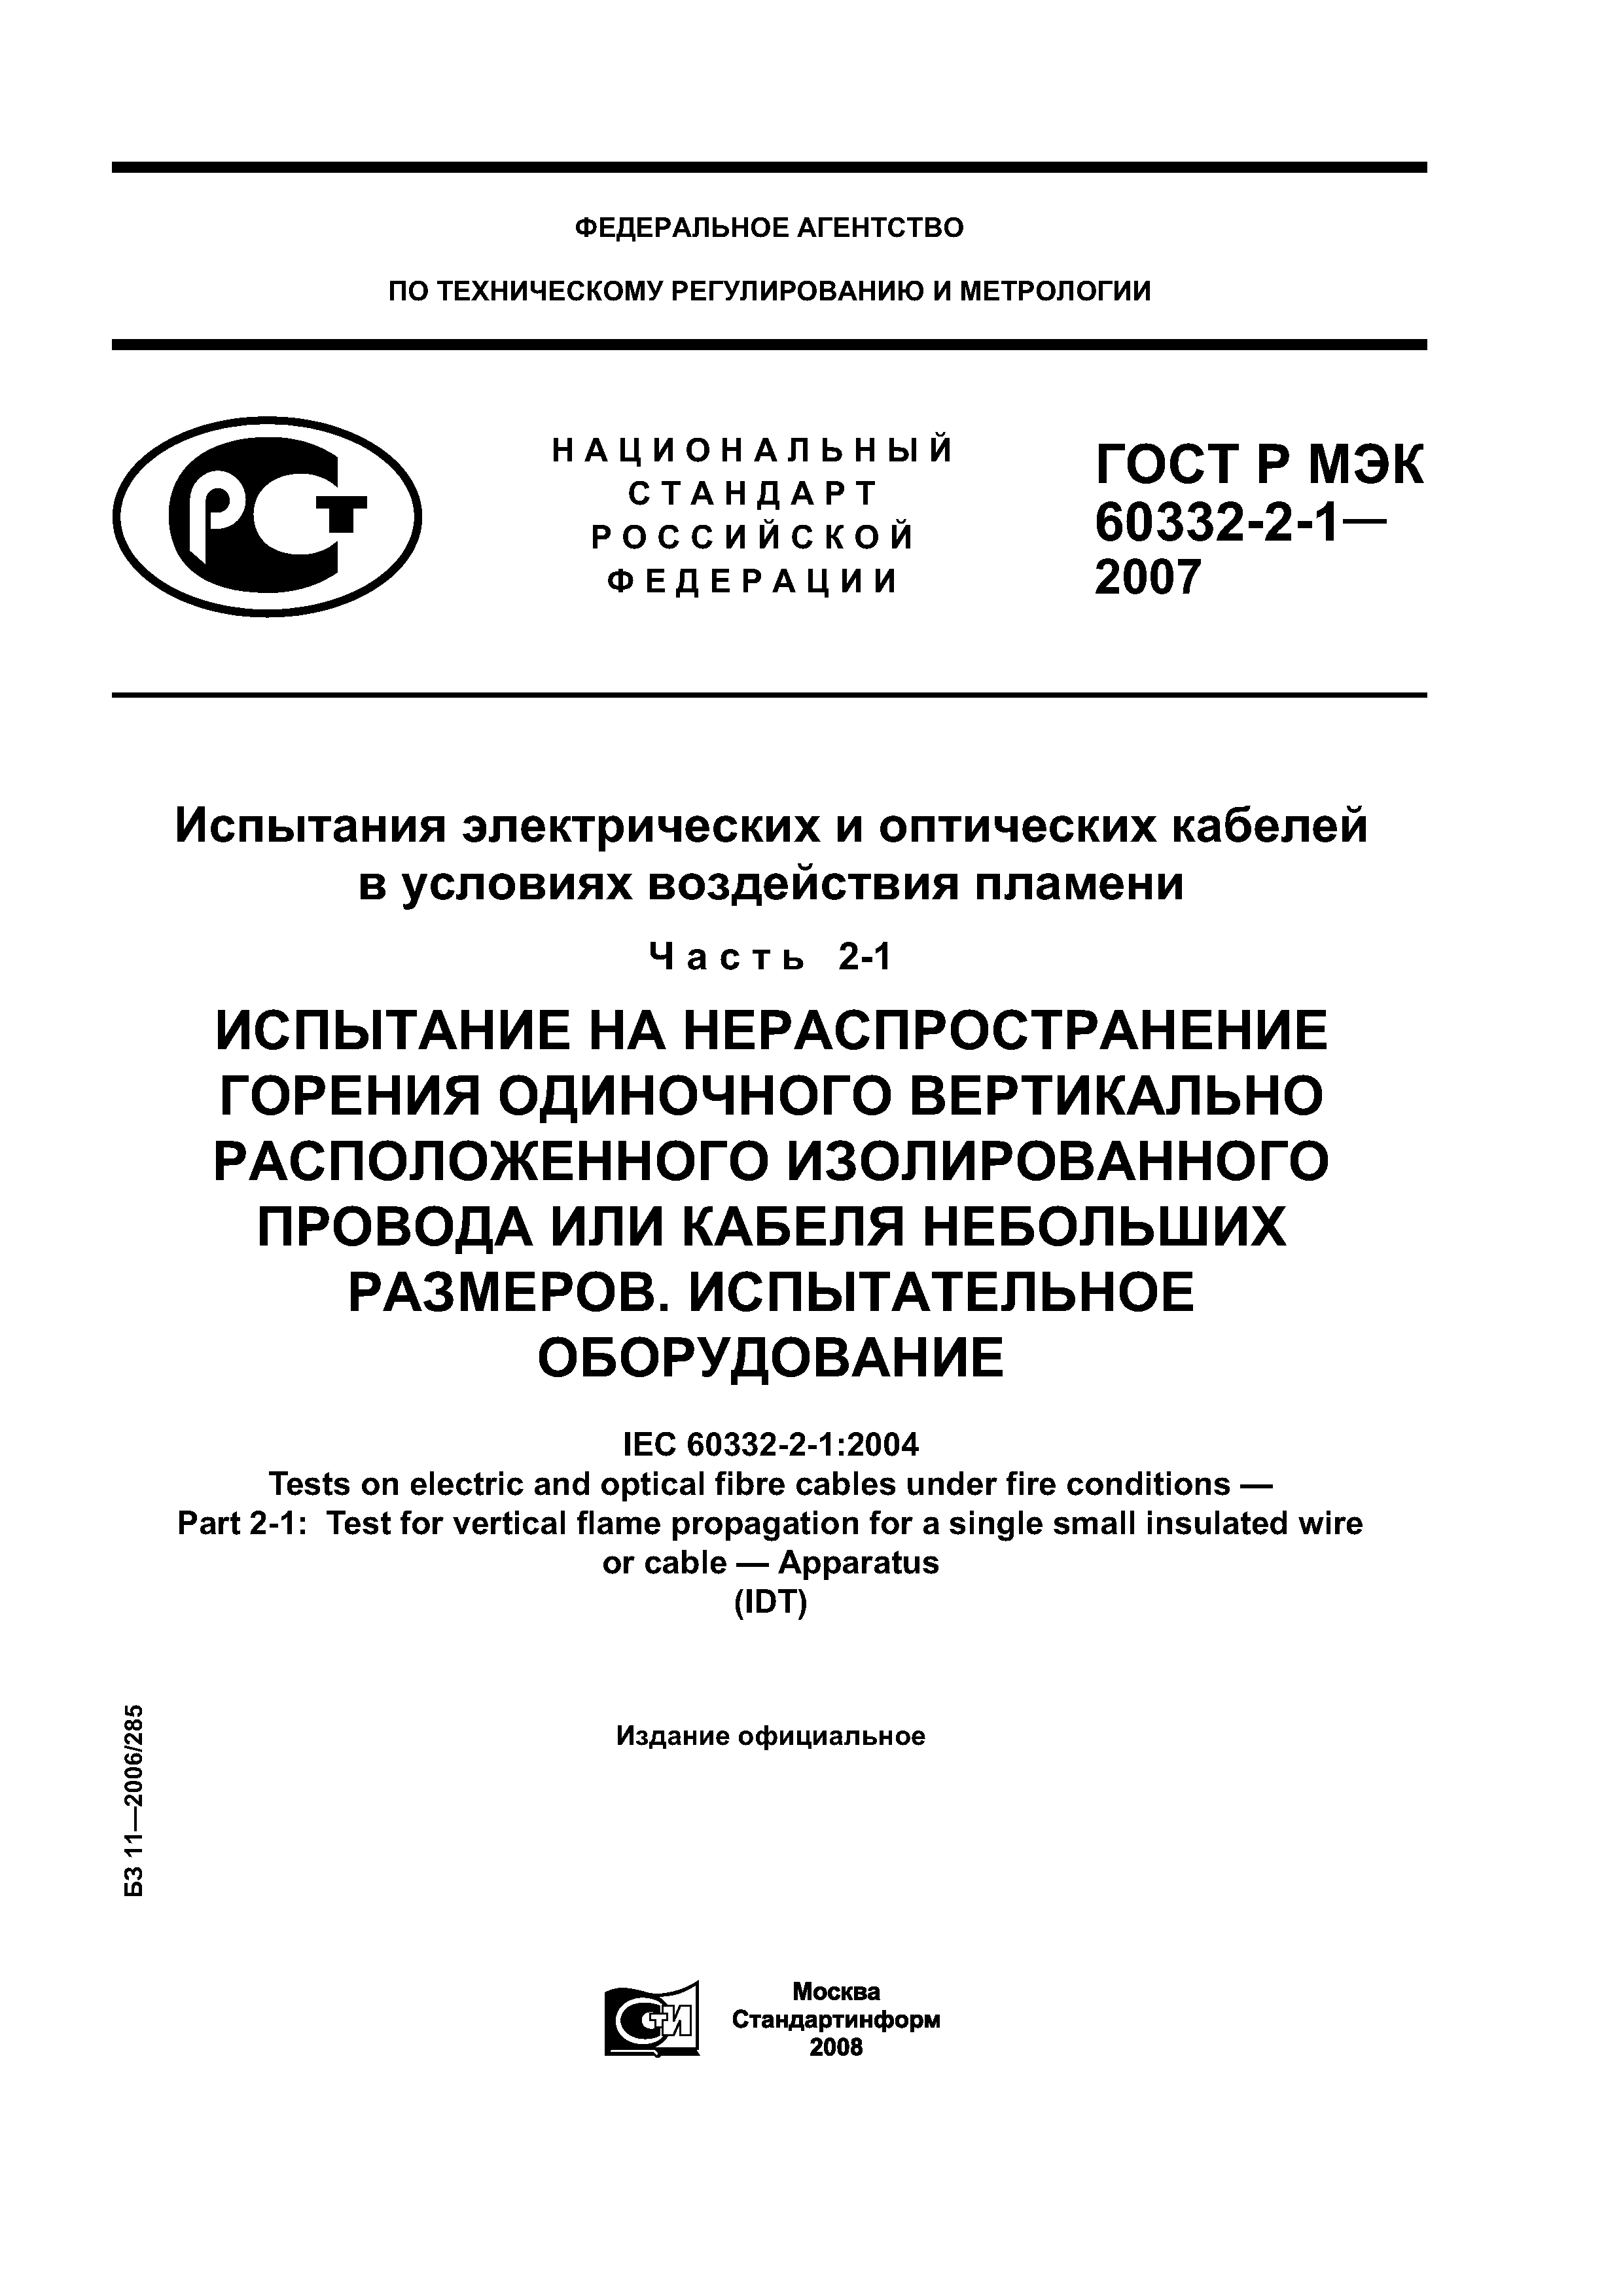 ГОСТ Р МЭК 60332-2-1-2007